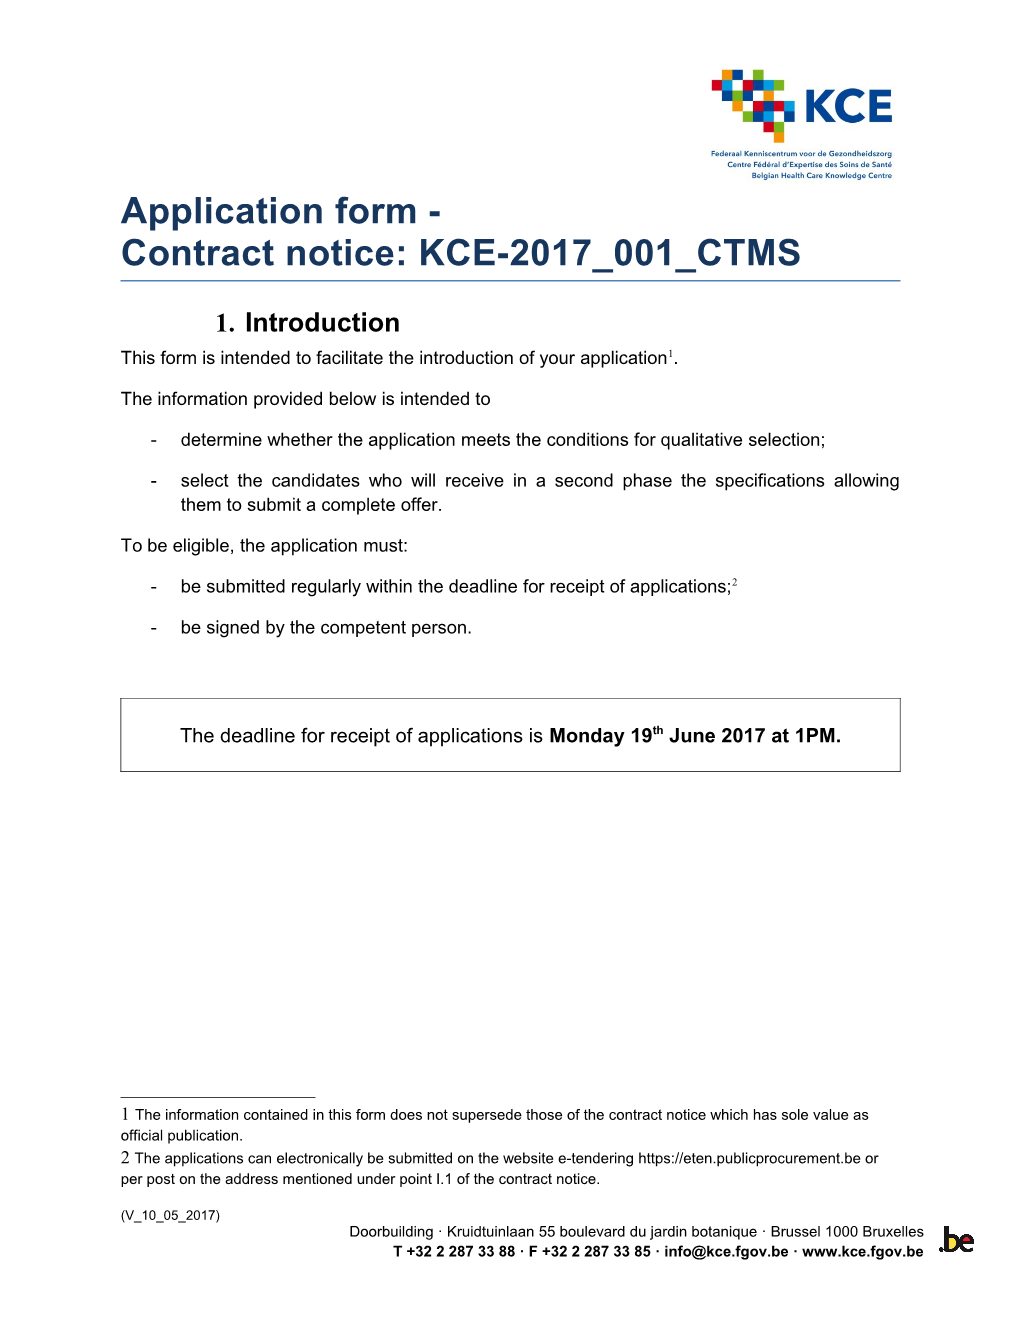 KCE Application Form KCE-2017 001 Ctmspage 1Of8